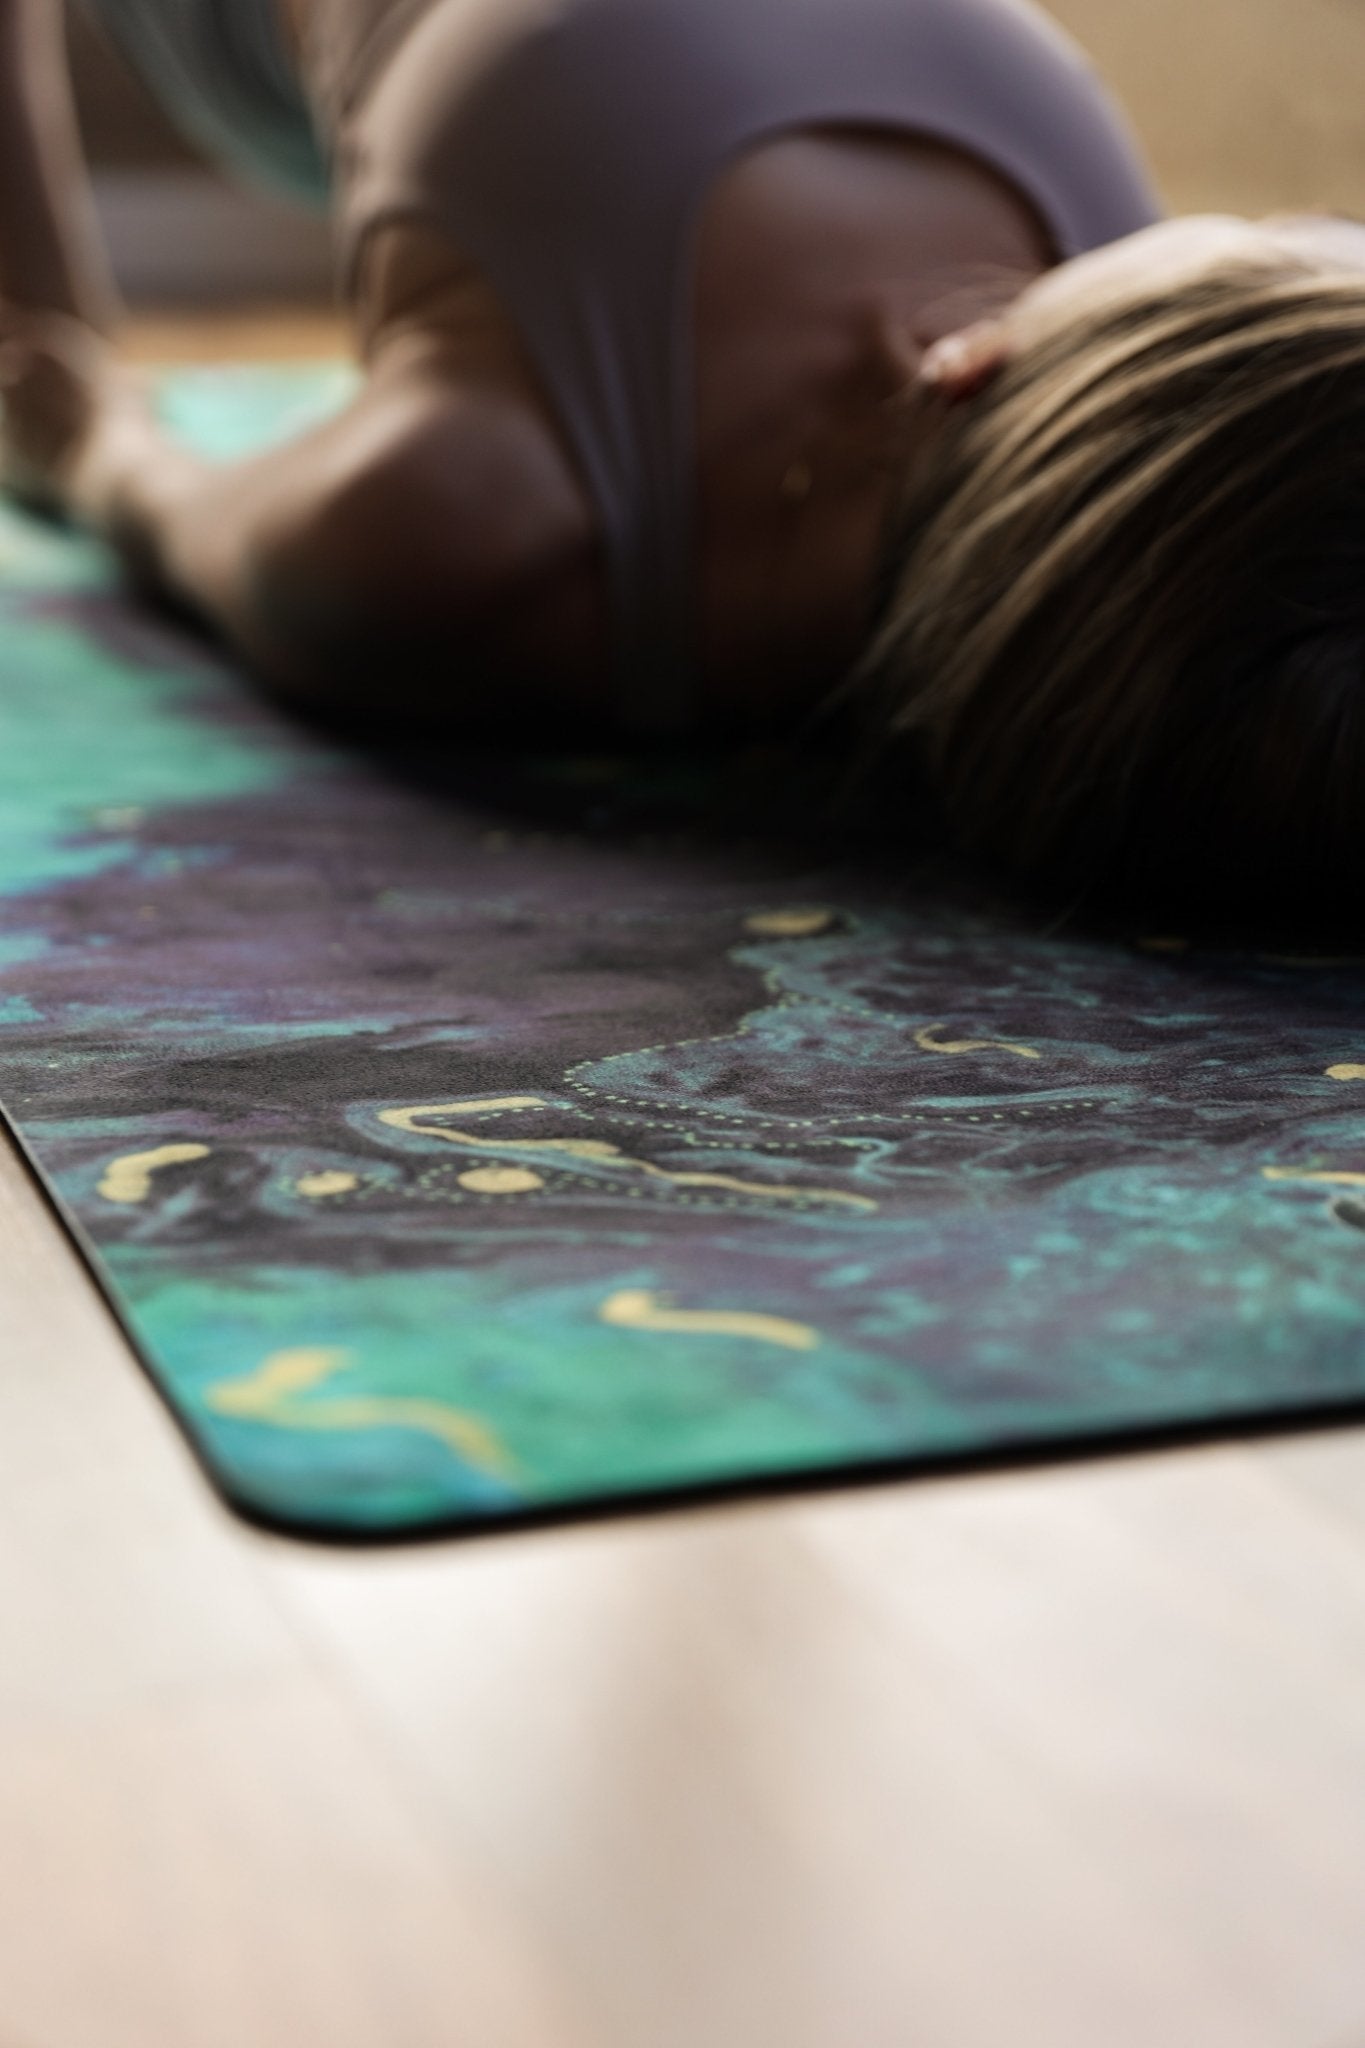 Sample Aurora Grip+ Yoga & Pilates Mat - Emilia Rose Active